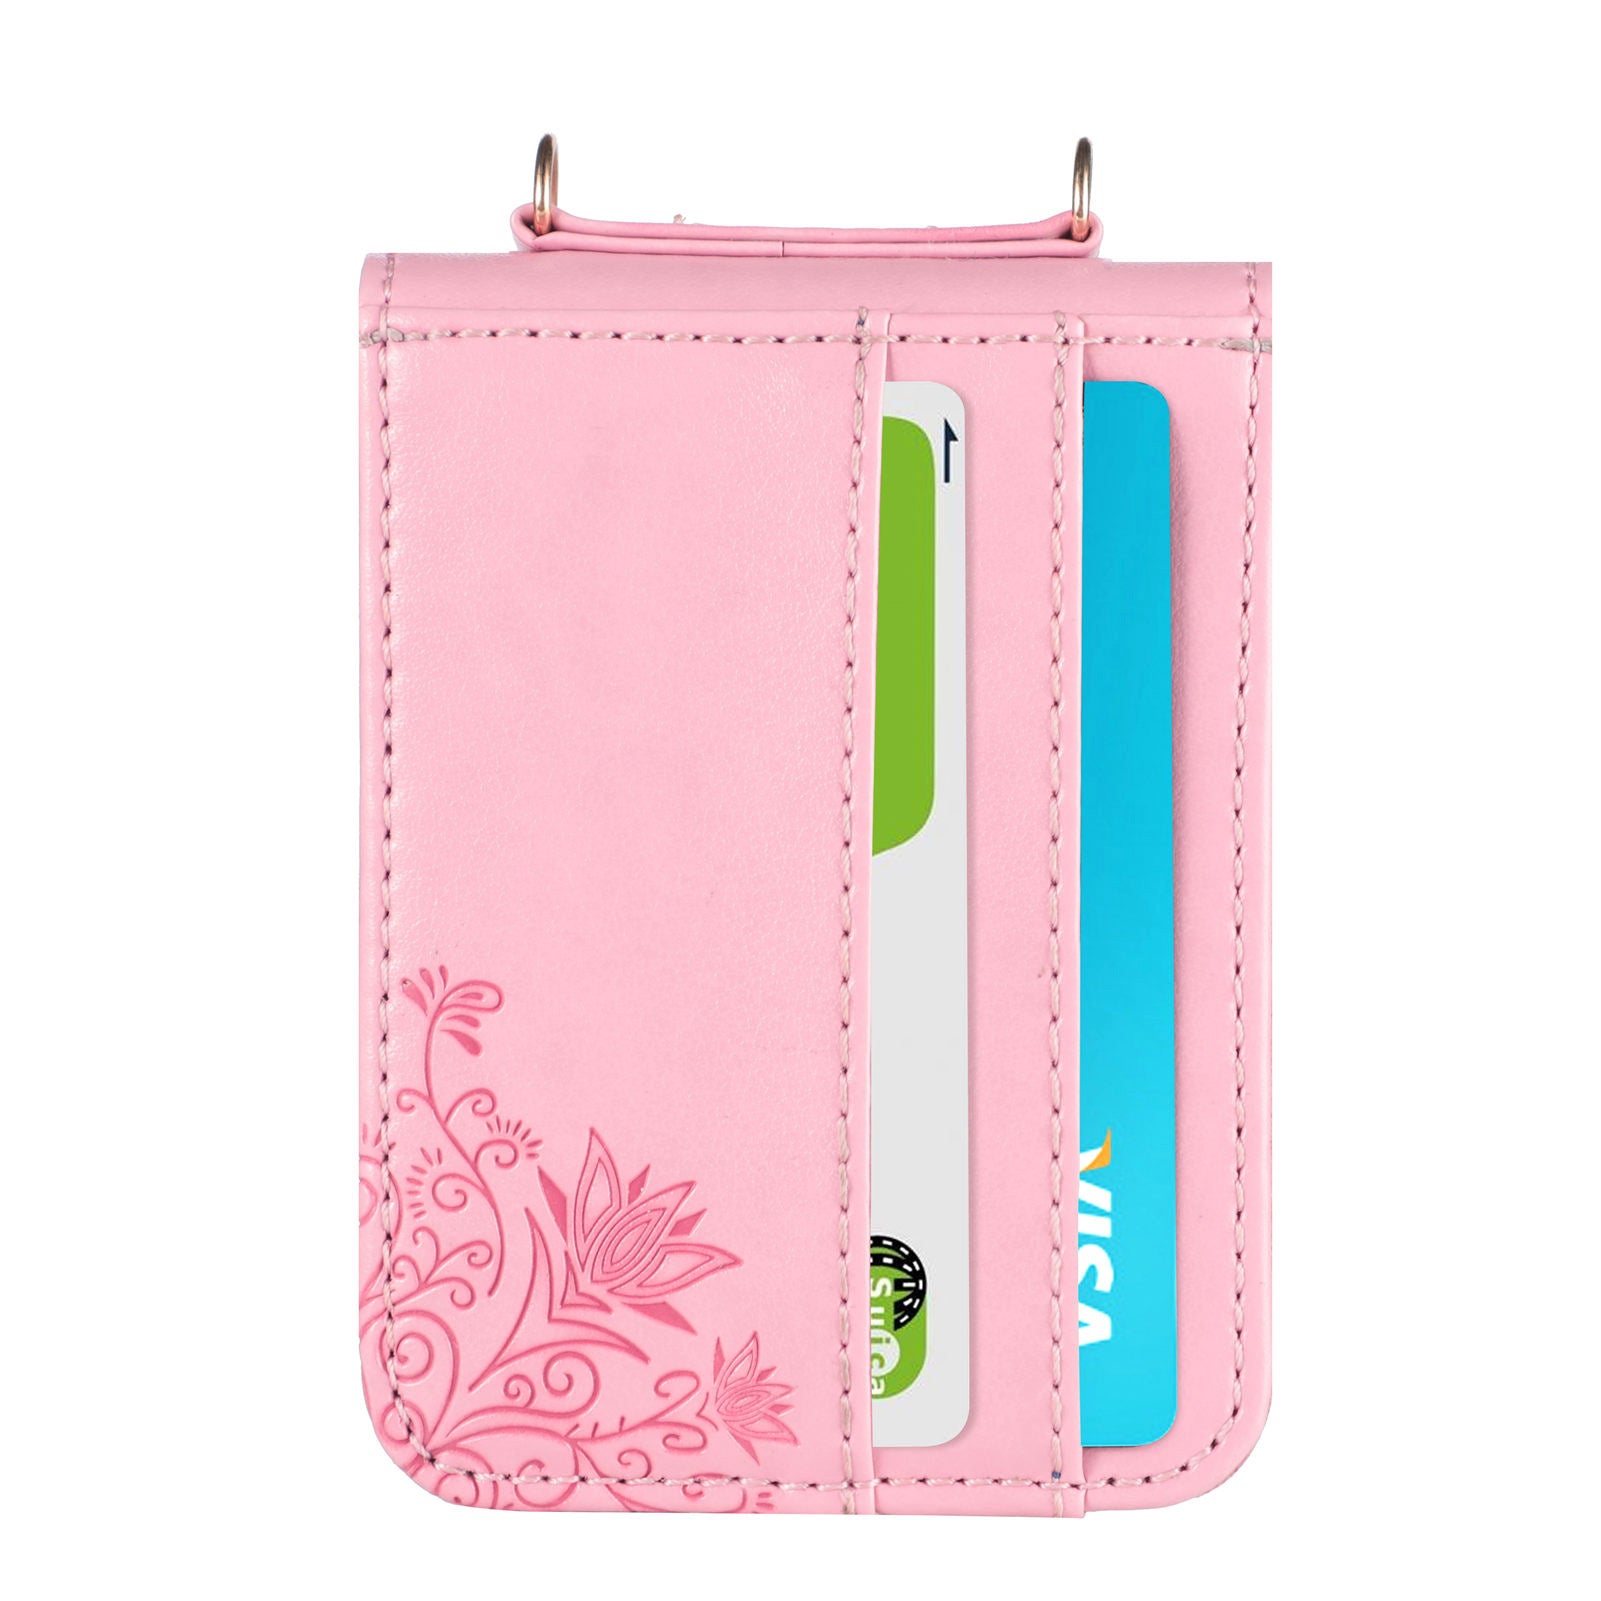 Z Flip 3 leather wallet case